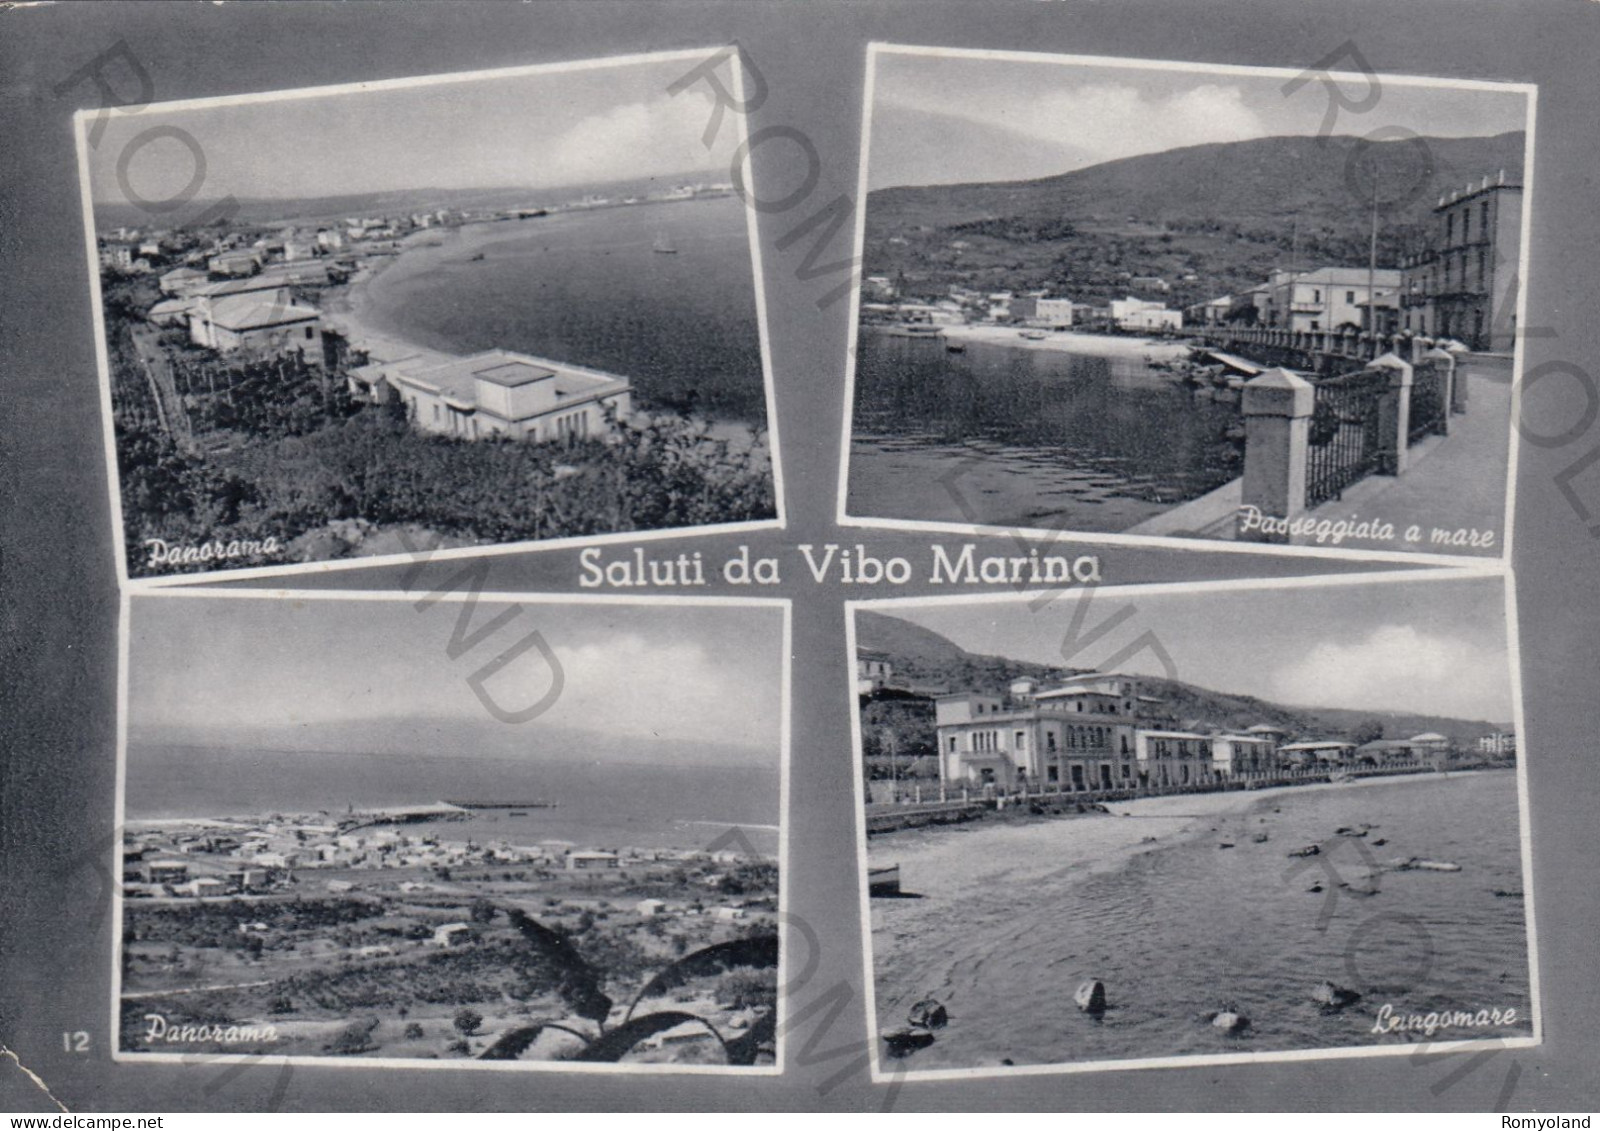 CARTOLINA  B5 VIBO MARINA,VIBO VALENTIA,CALABRIA-SALUTI DA VIBO MARINA-PANORAMA-LUNGOMARE-BELLA ITALIA,VIAGGIATA 1960 - Vibo Valentia